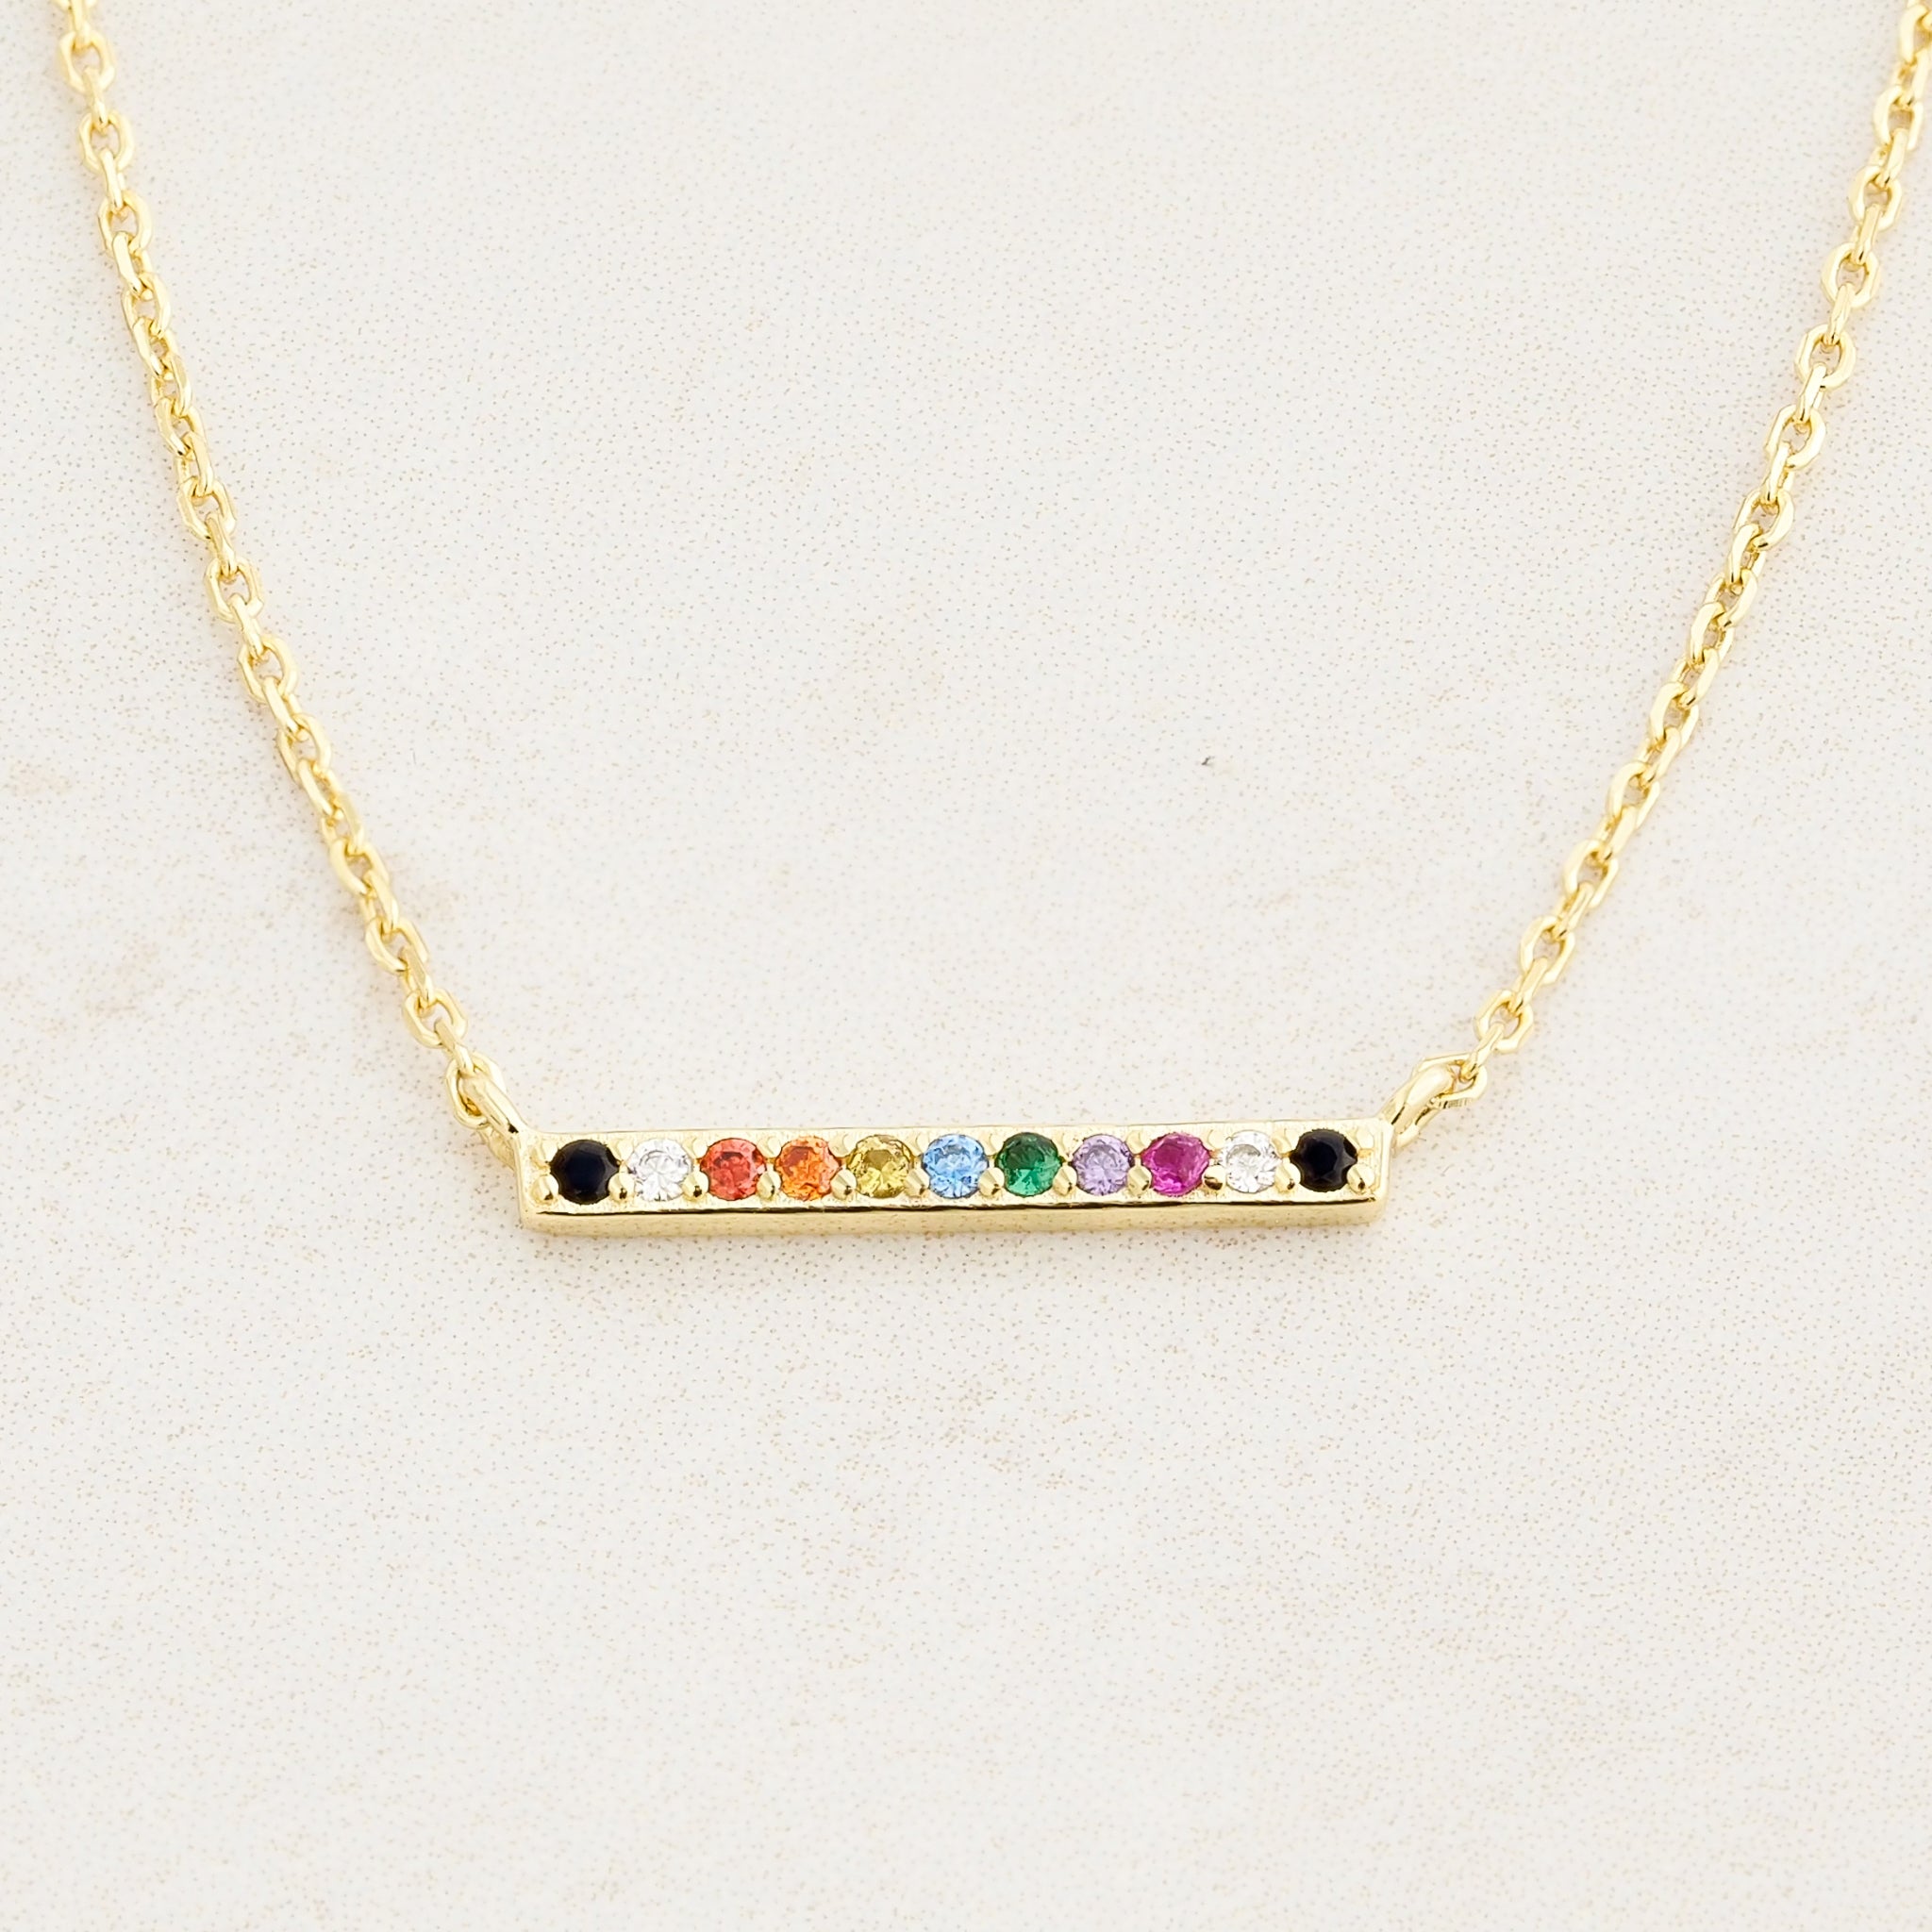 Rainbow Pride Bar Necklace